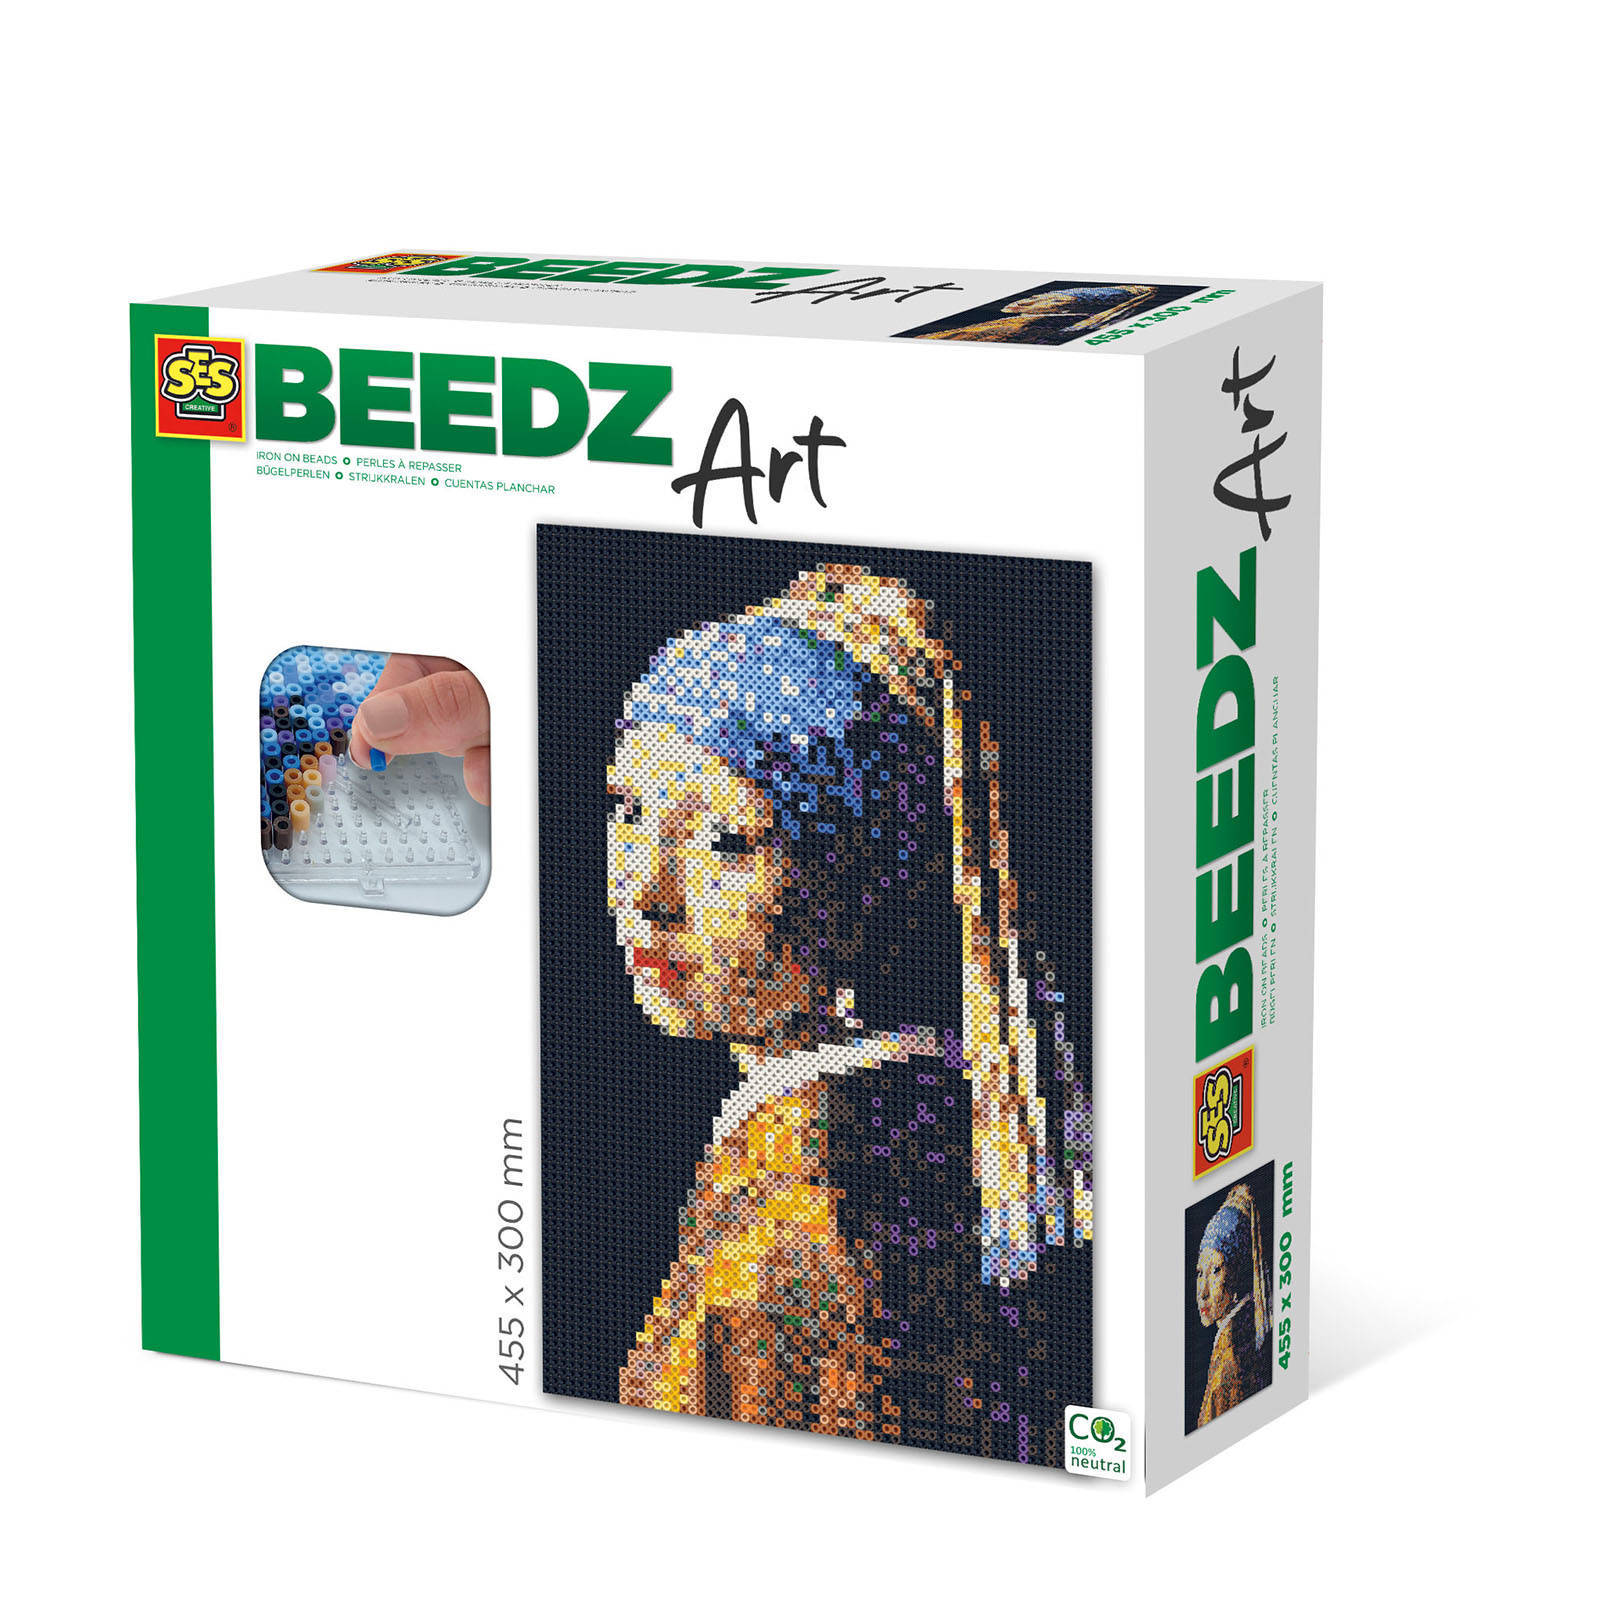 SES Strijkkraalkunstwerk Beedz Art Vermeer 45, 5 Cm 9 delig online kopen